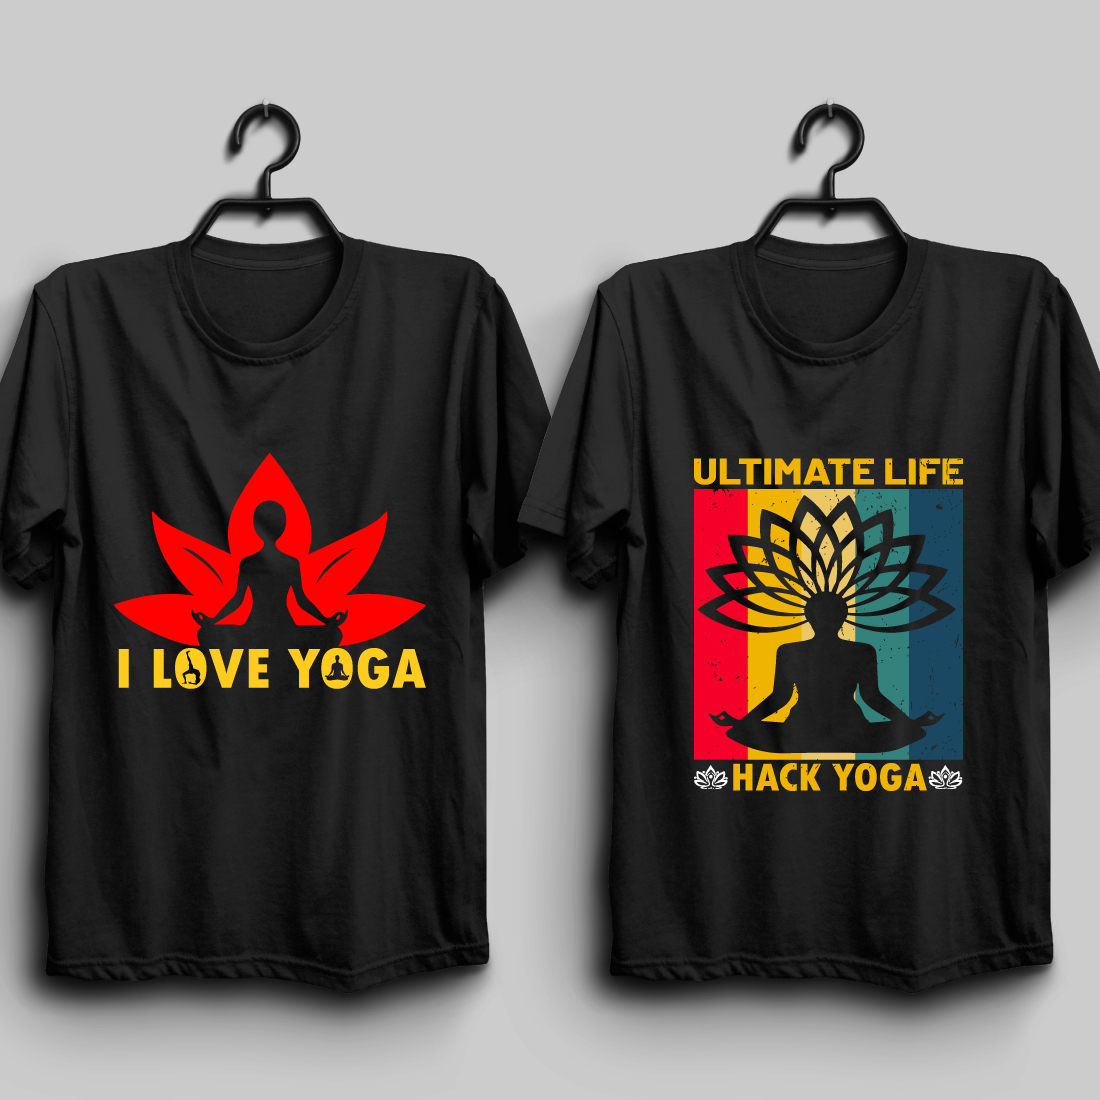 Yoga T shirt Design Bundle preview image.